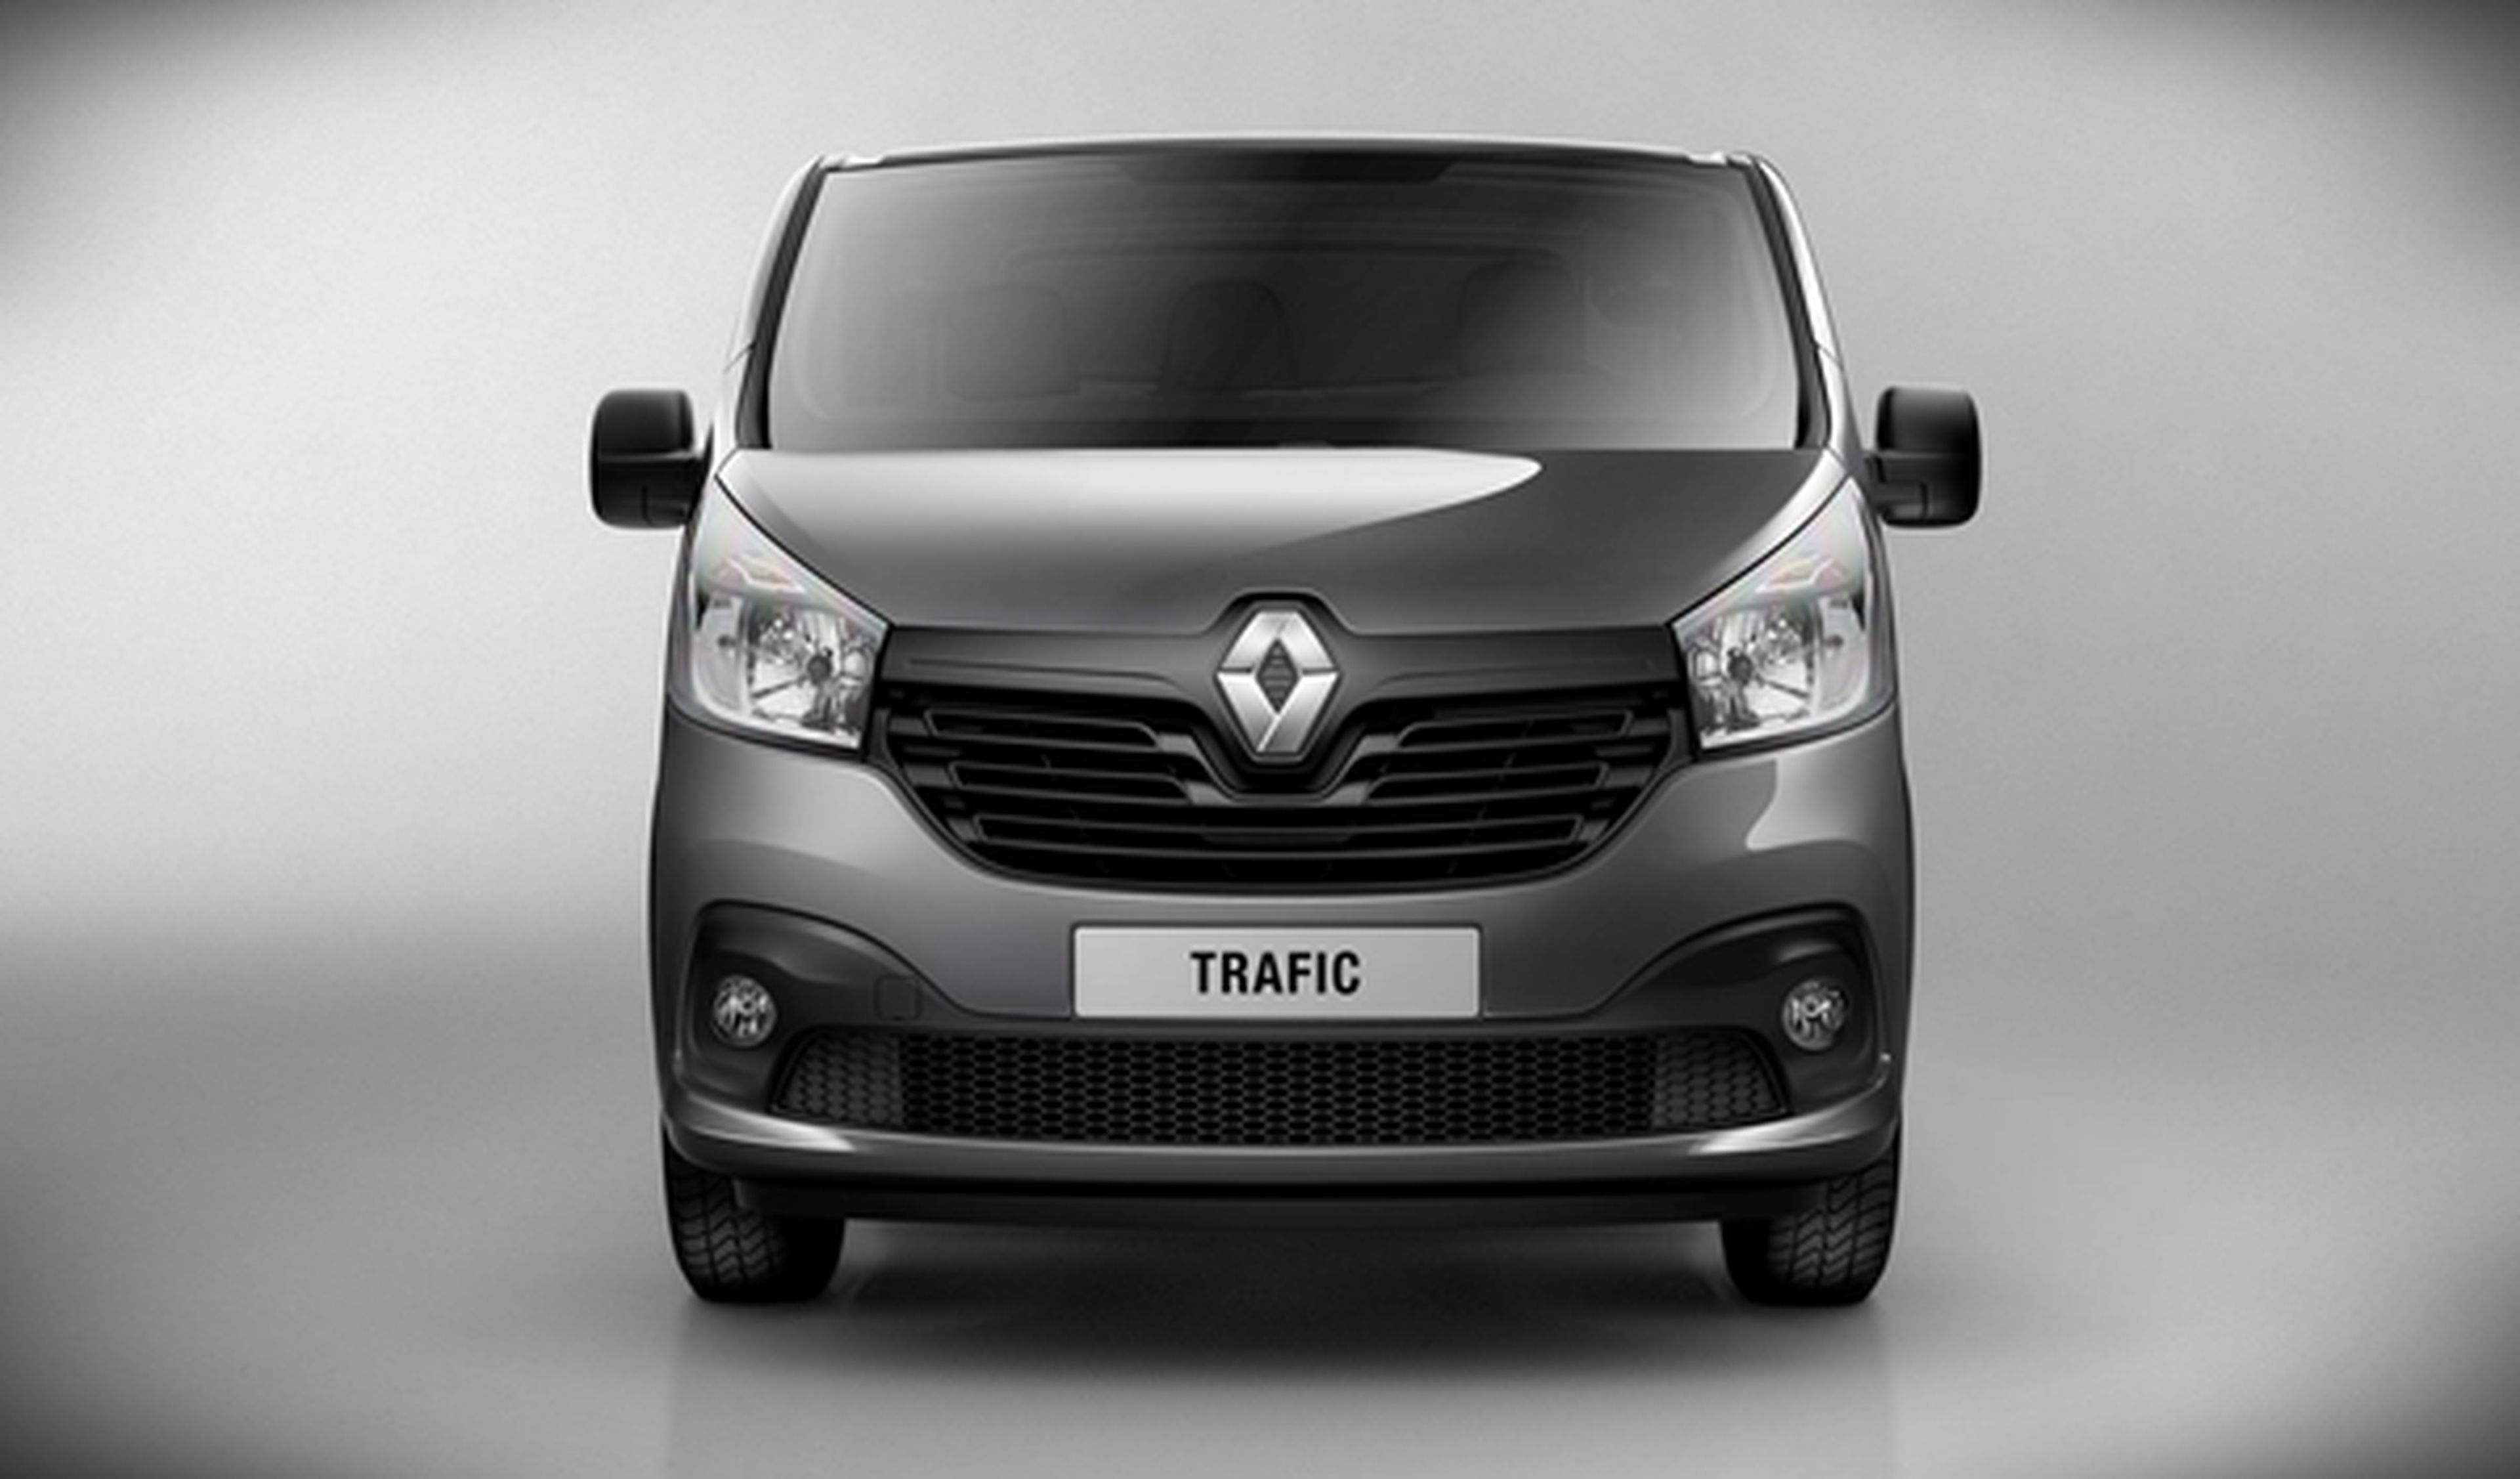 Características del modelo Renault Trafic Combi